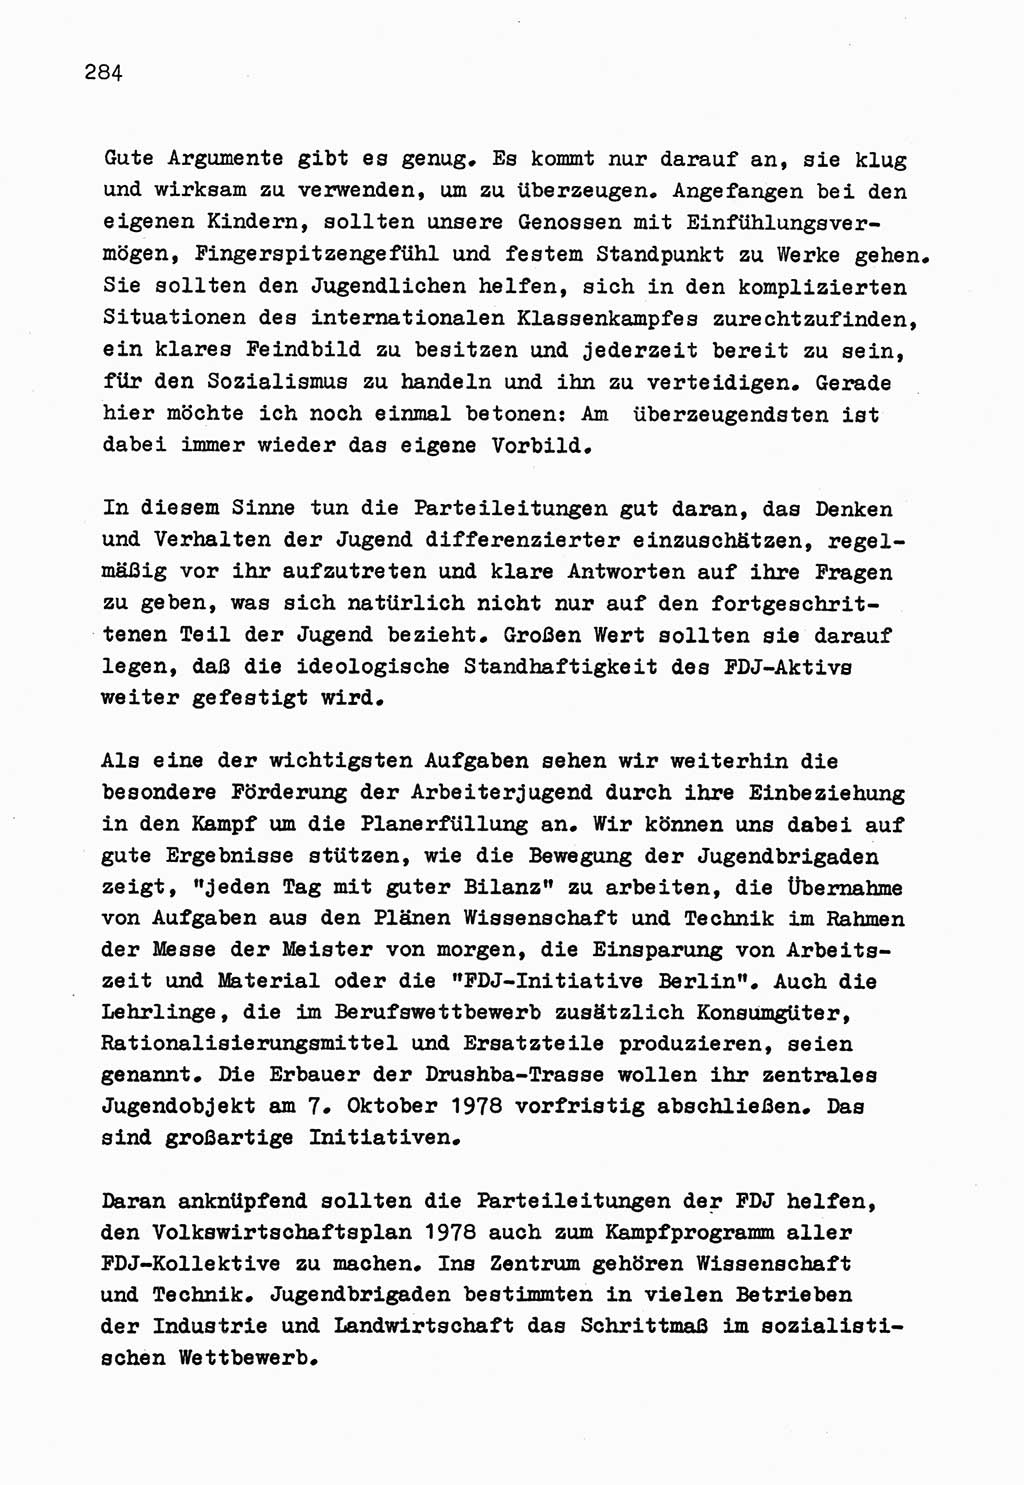 Zu Fragen der Parteiarbeit [Sozialistische Einheitspartei Deutschlands (SED) Deutsche Demokratische Republik (DDR)] 1979, Seite 284 (Fr. PA SED DDR 1979, S. 284)